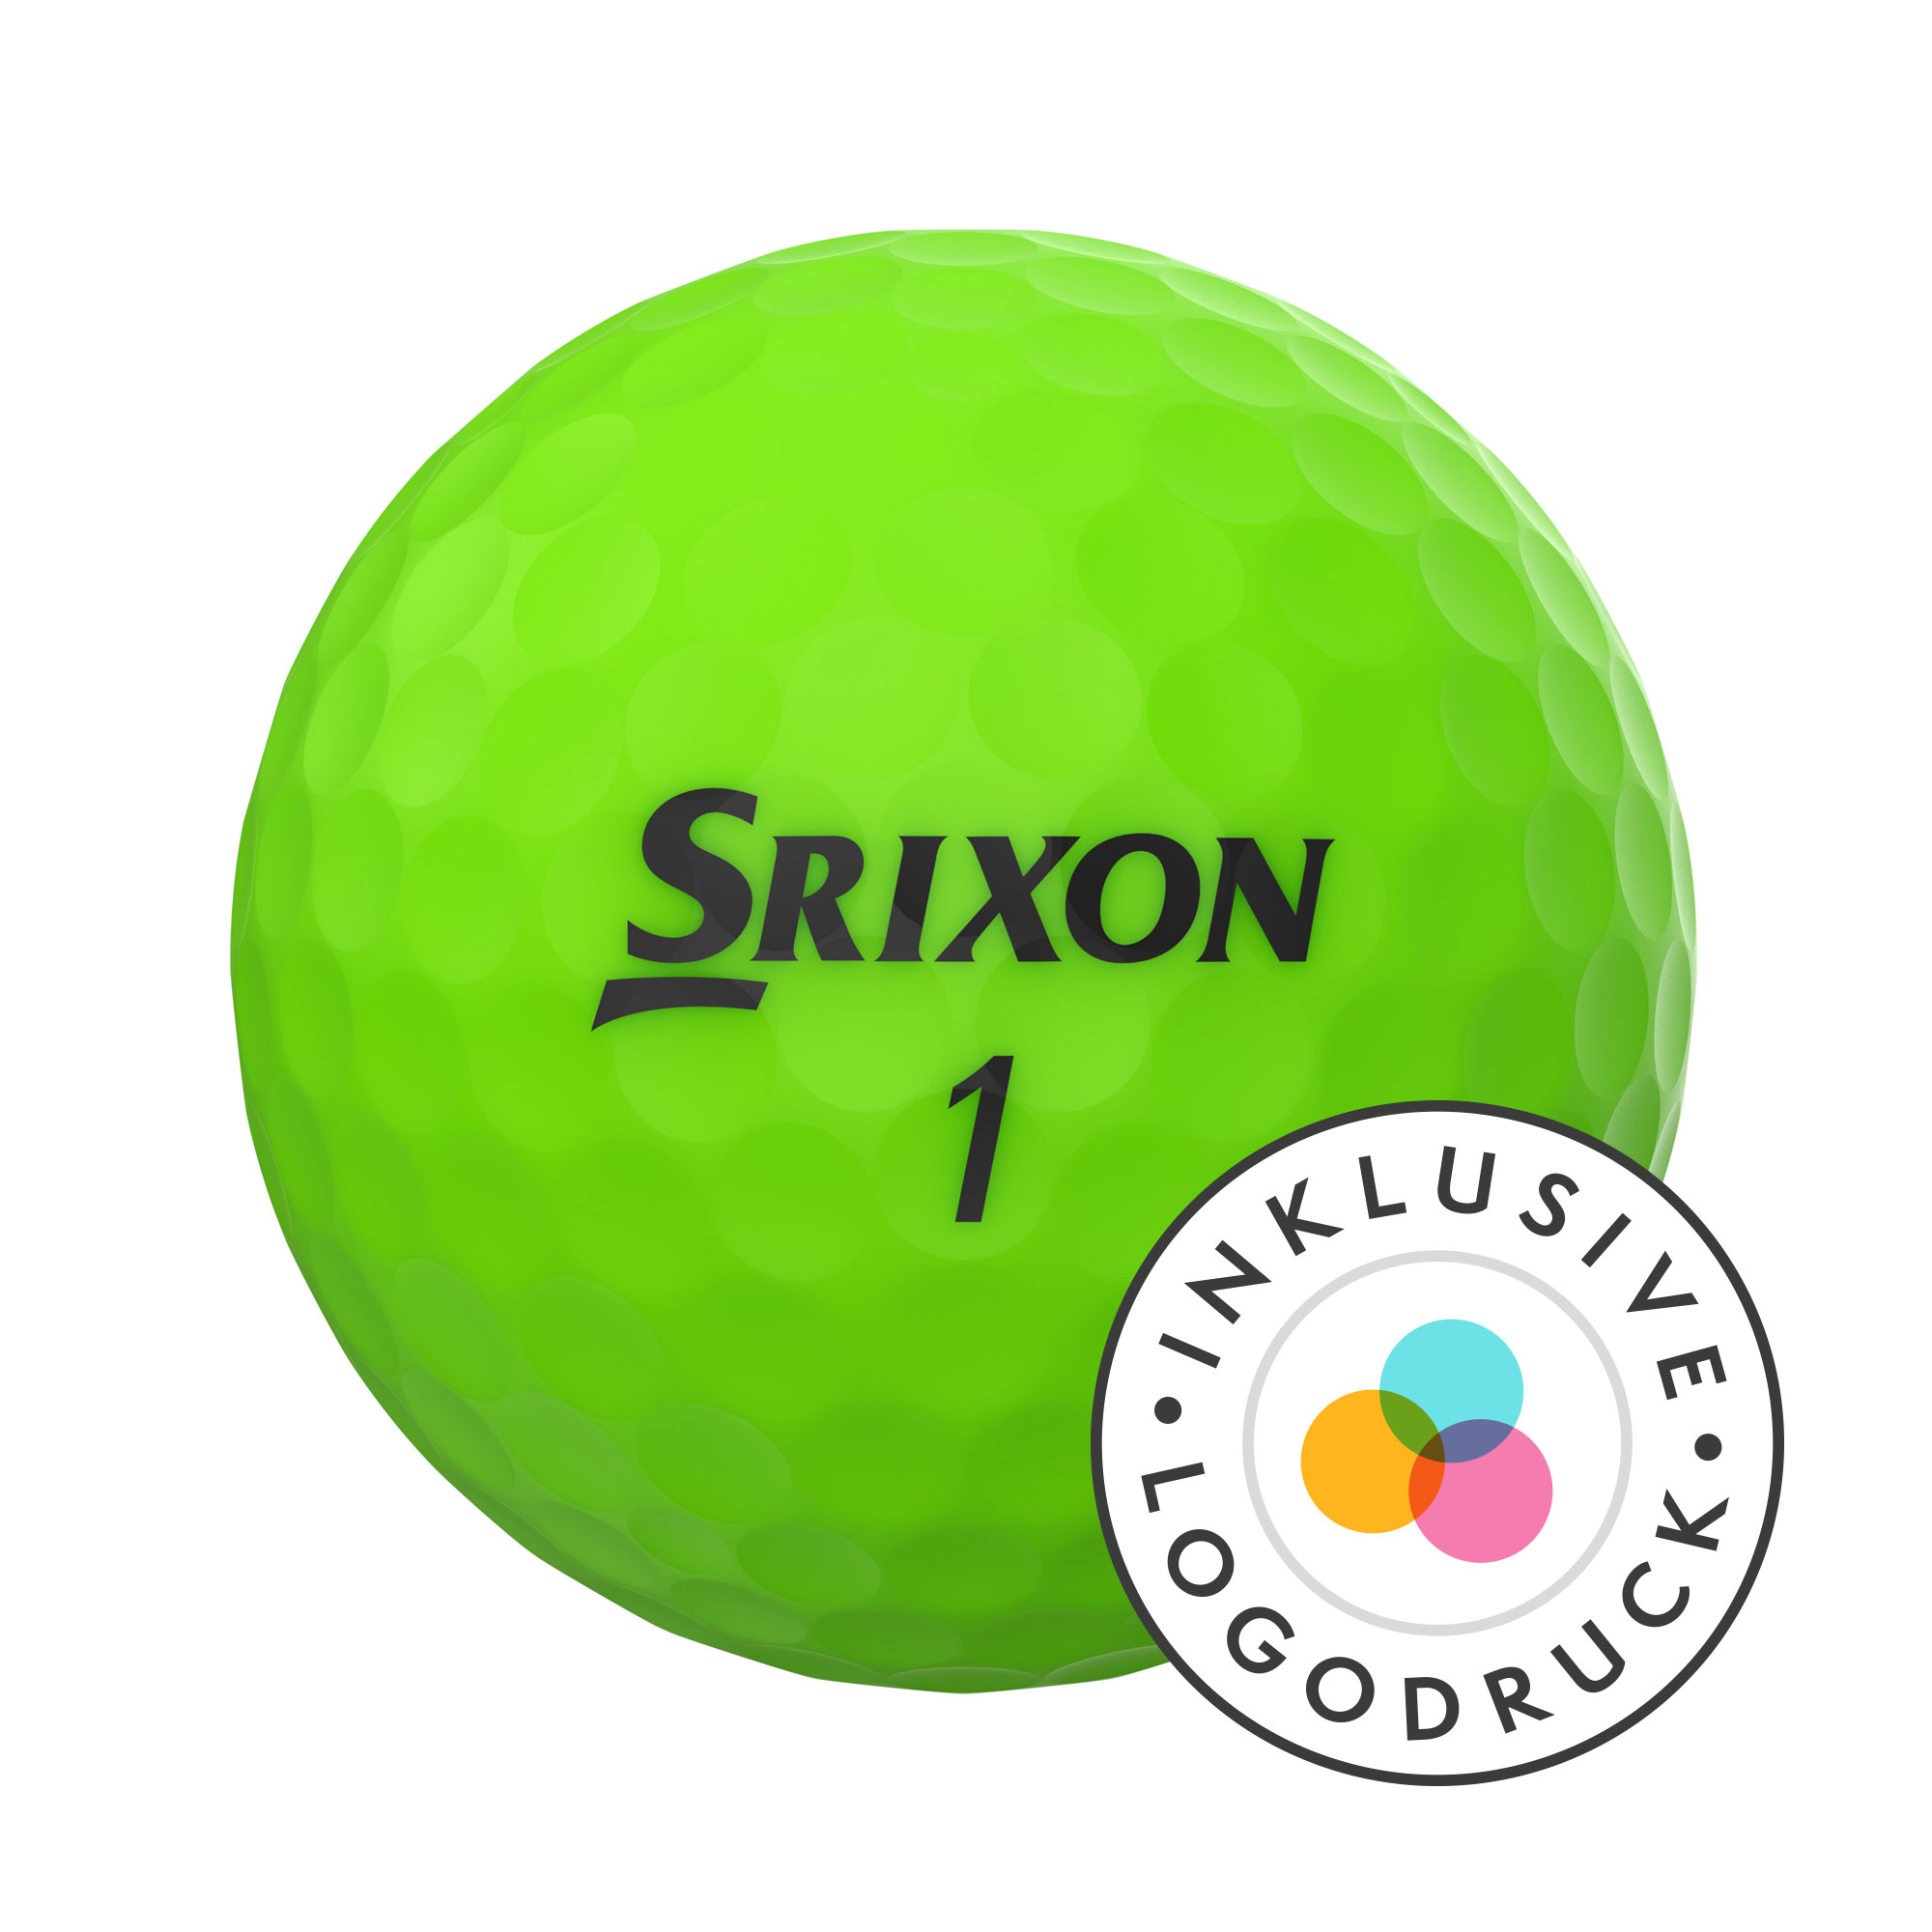 Srixon Soft Feel Golfbälle bedruckt, brite green (VPE à 12 Bälle)